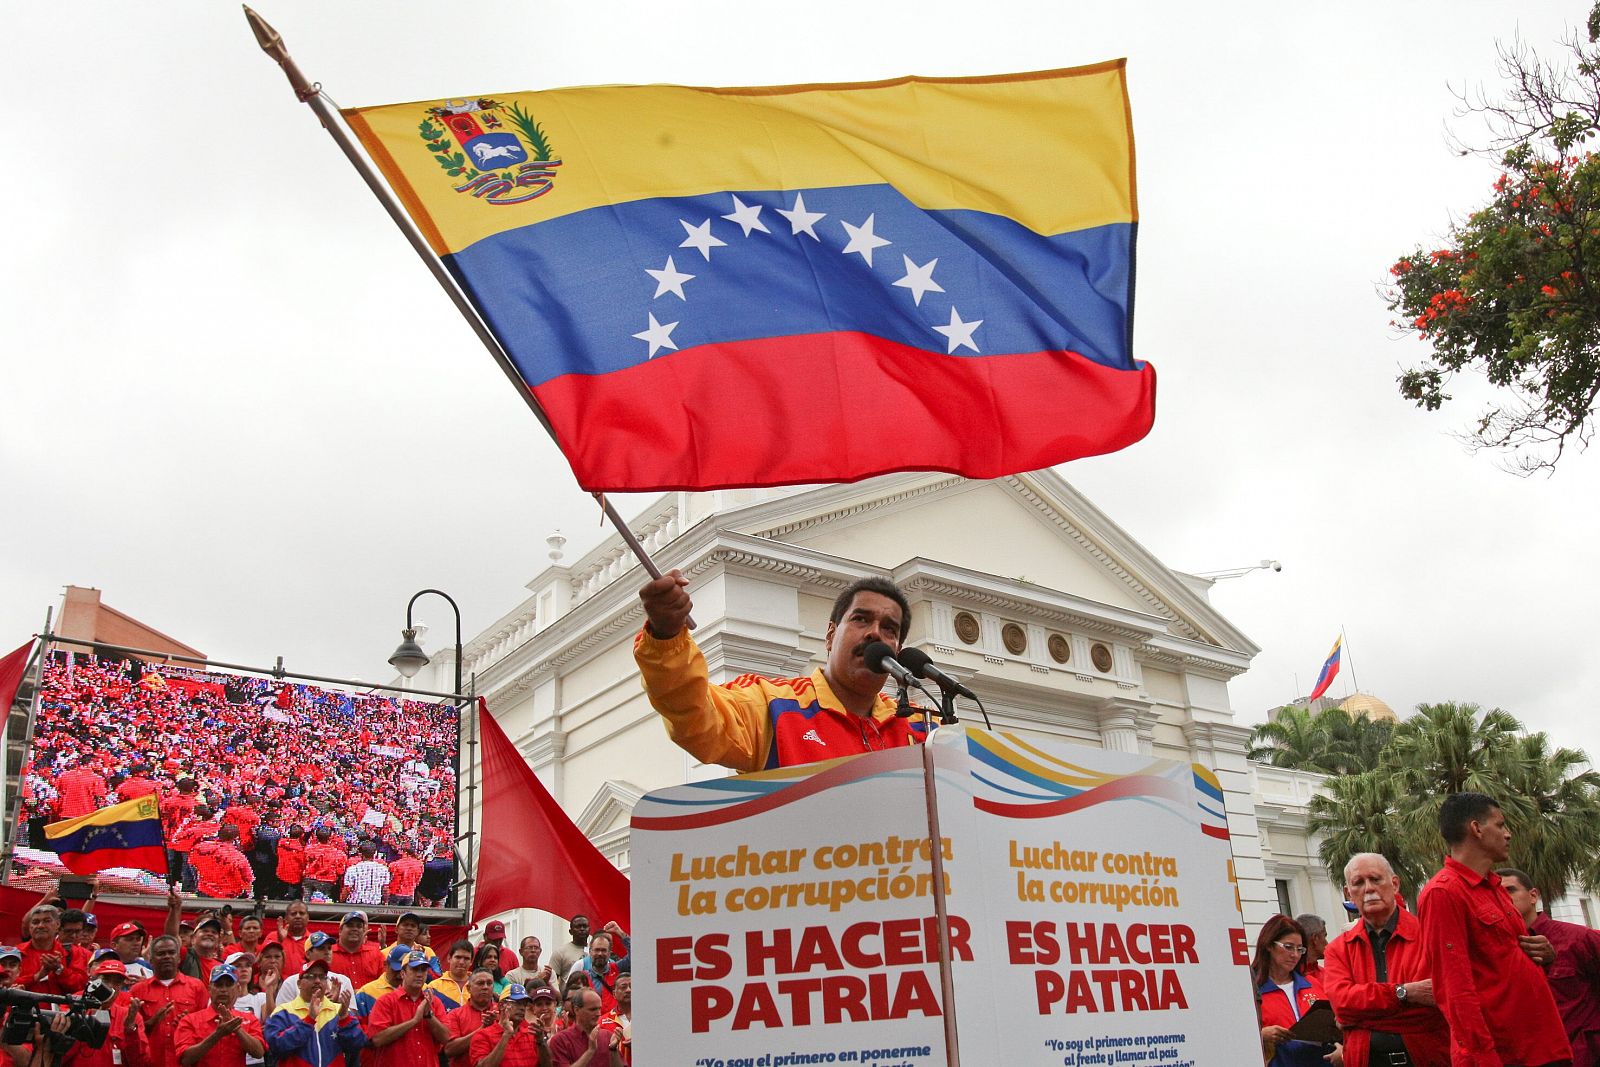 Nicolás Maduro, pronunciando un discurso durante una manifiestación contra la corrupción, en Caracas (Venezuela).